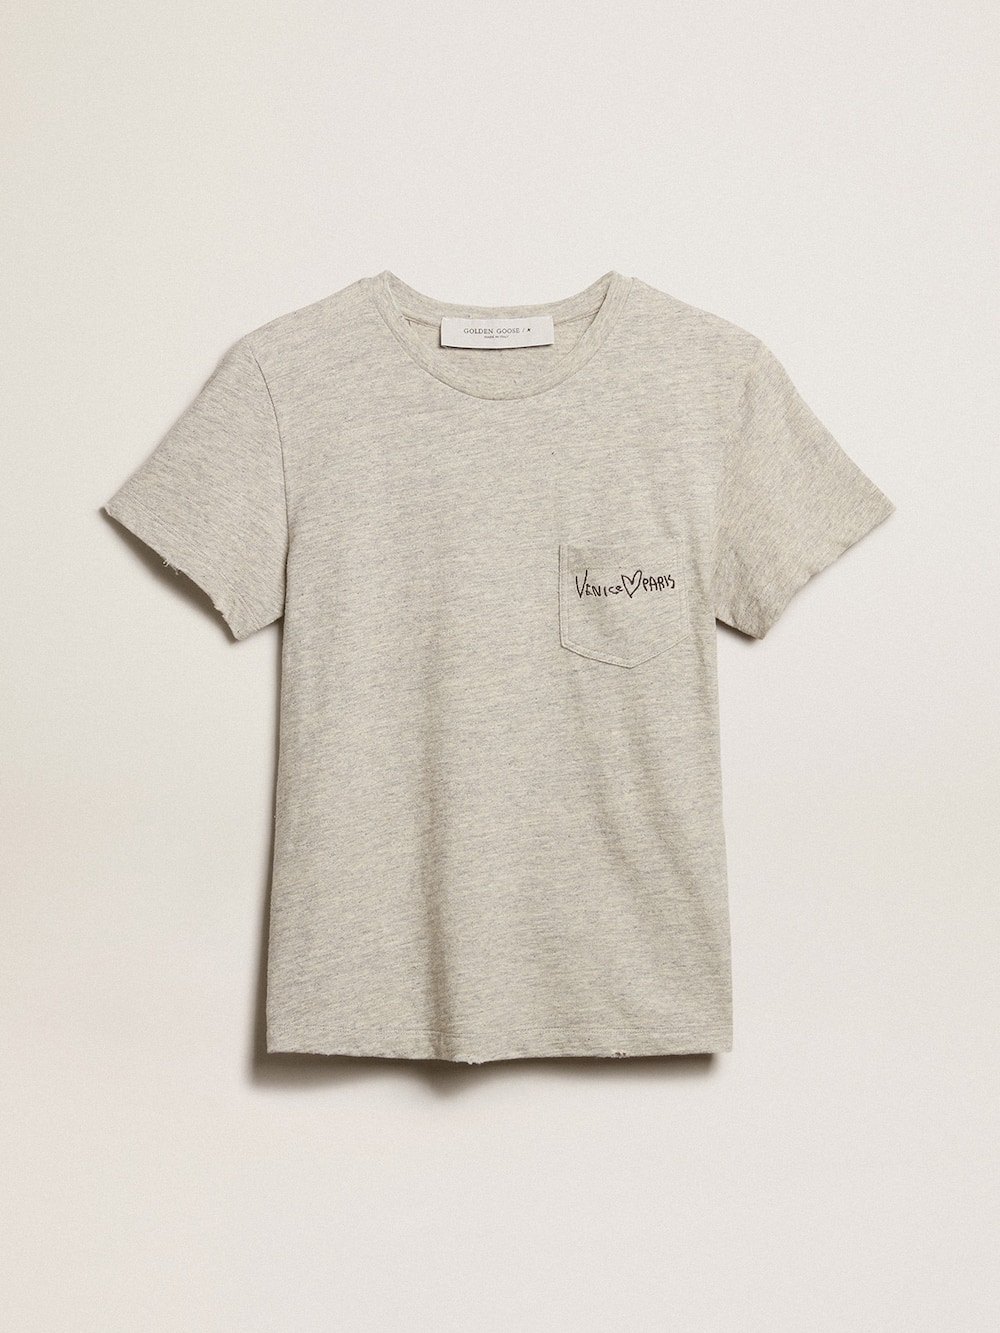 Golden Goose - Camiseta de mujer en algodón color gris jaspeado con mensaje bordado in 